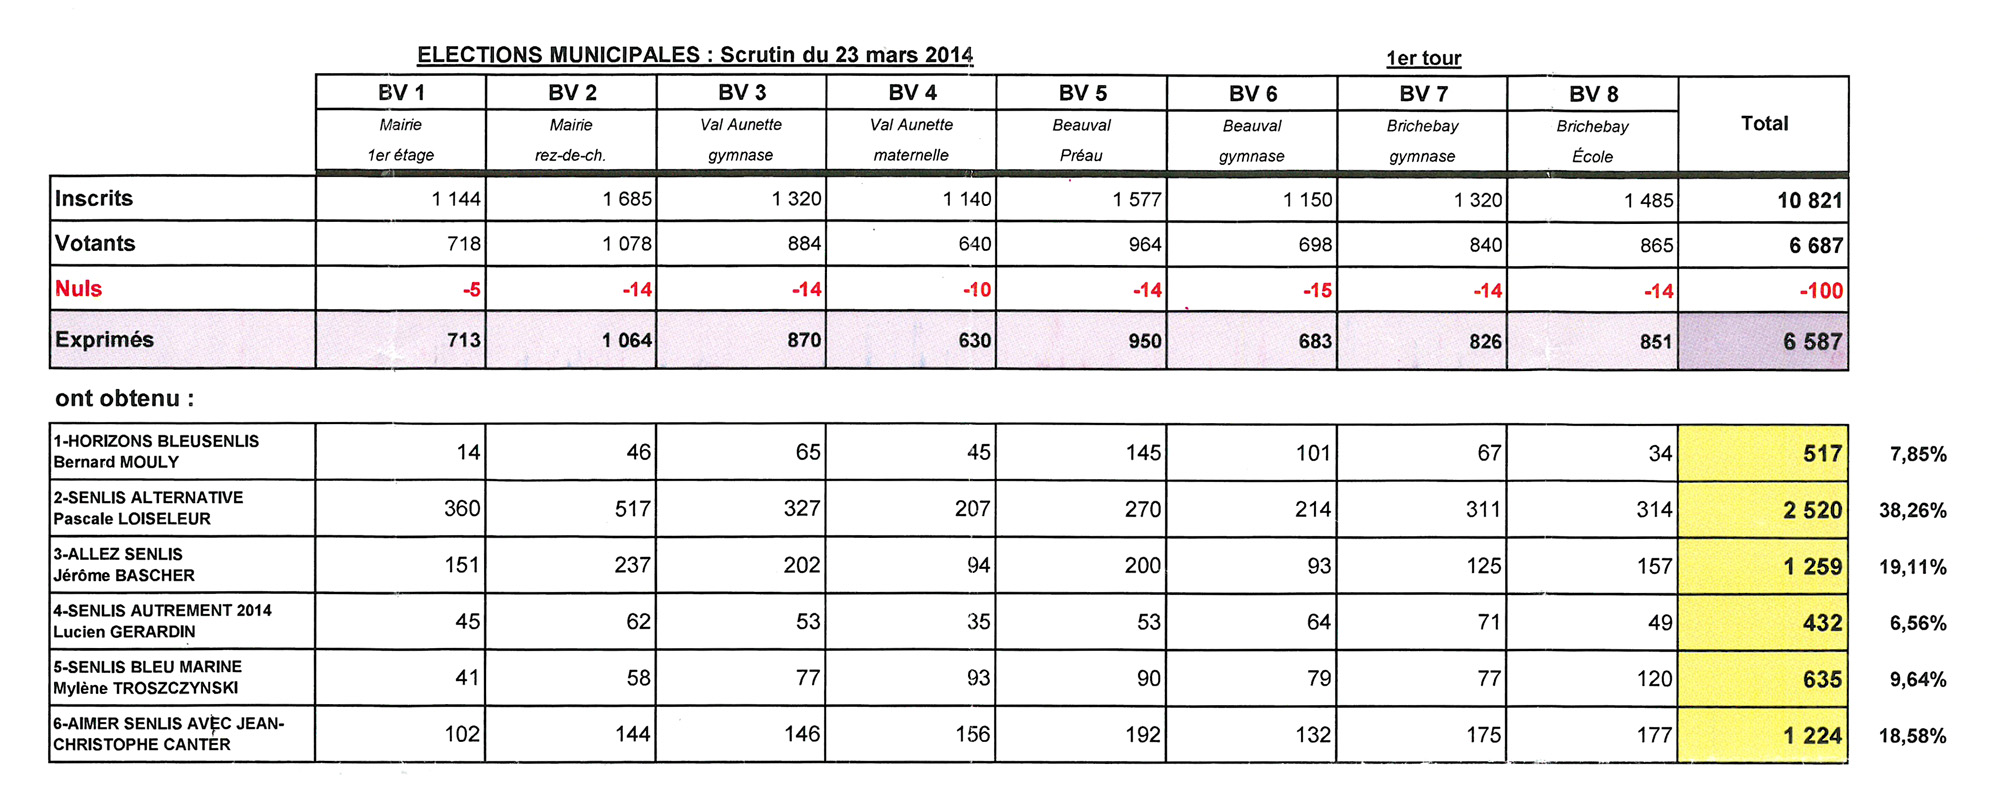 ELEC-Municipales 2014-Résultats-1er tour